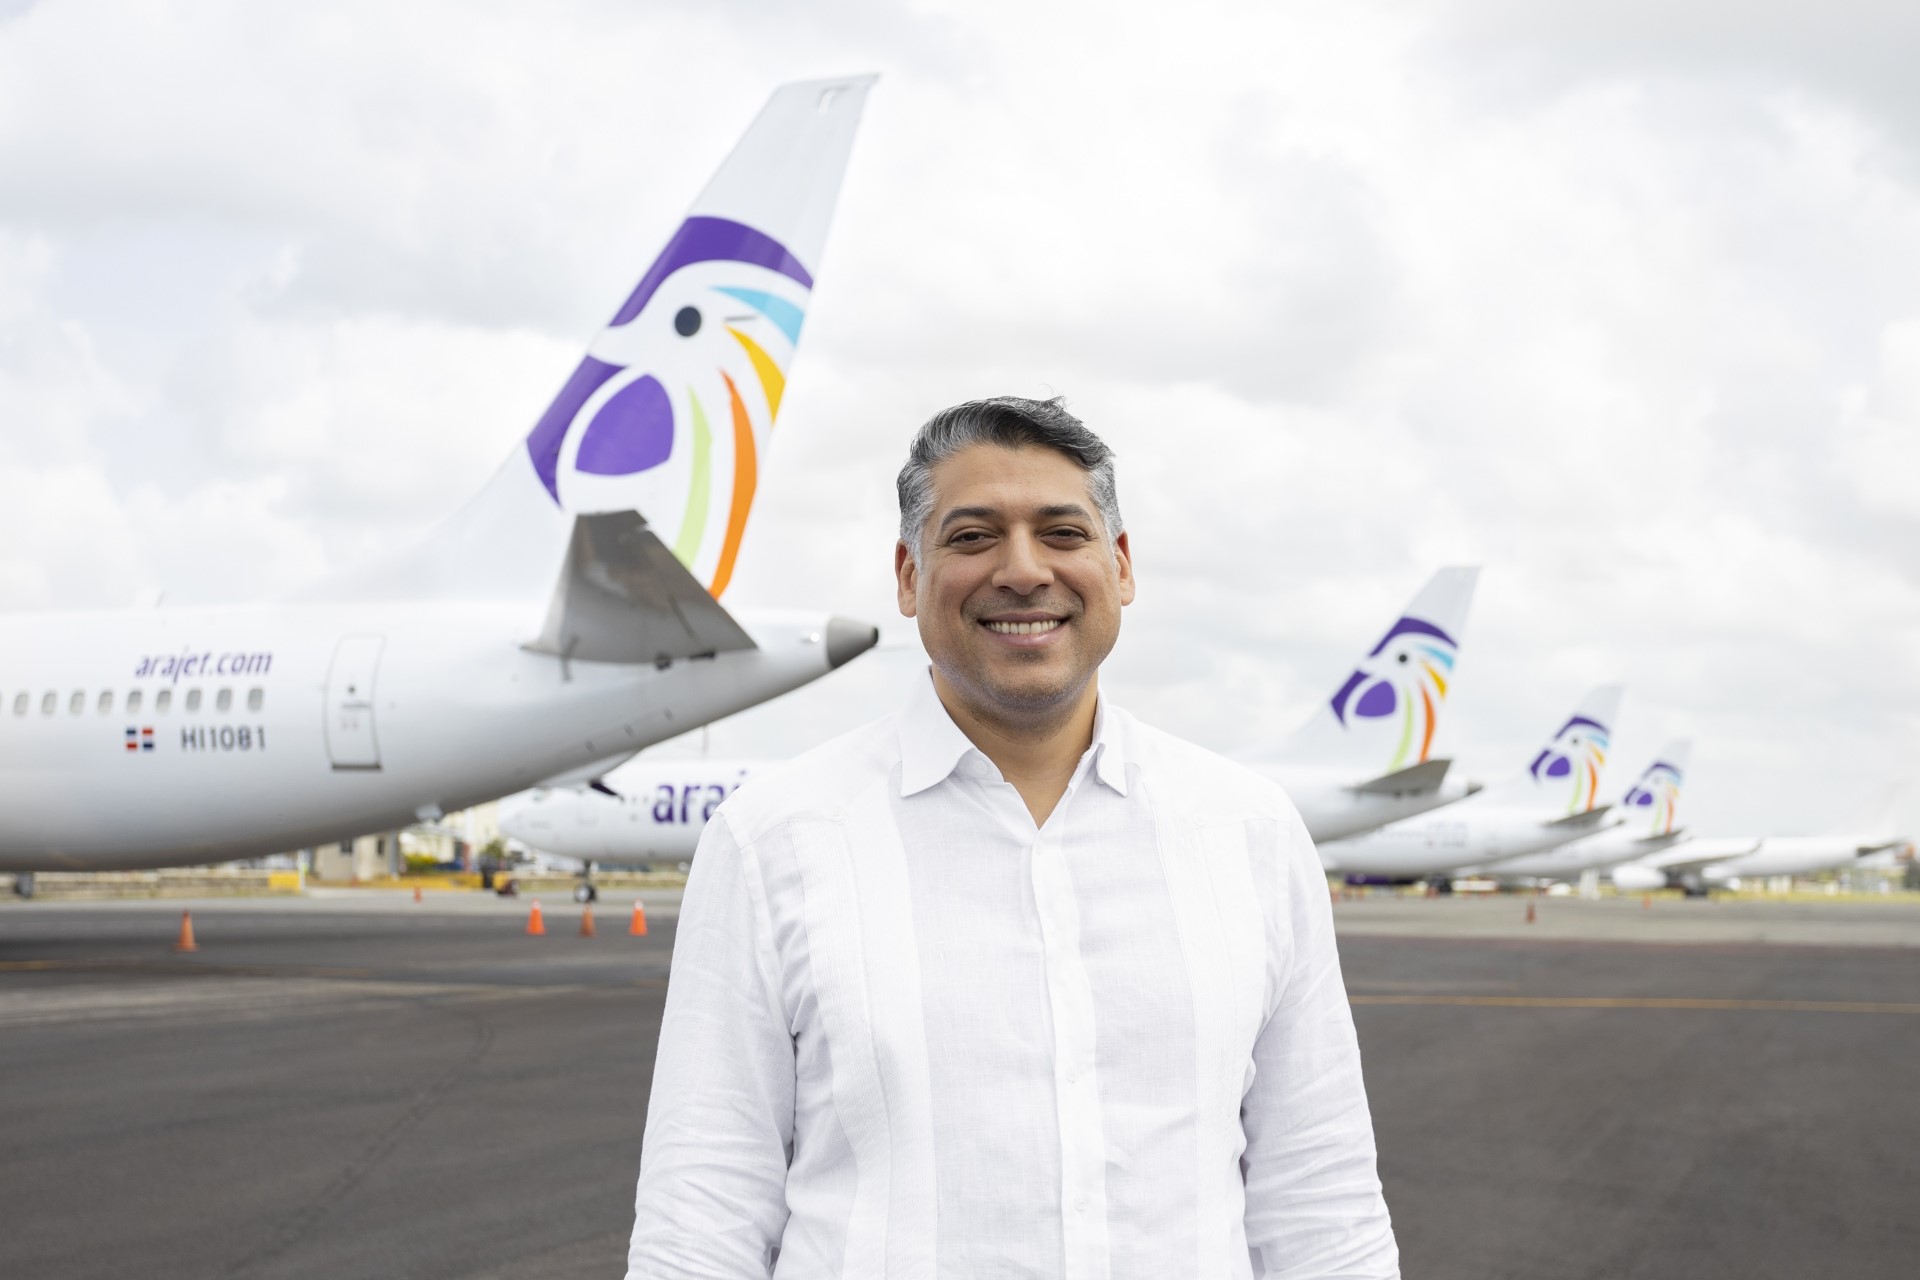 Arajet duplica llegada de turistas desde Centroamérica a República Dominicana con vuelos directos